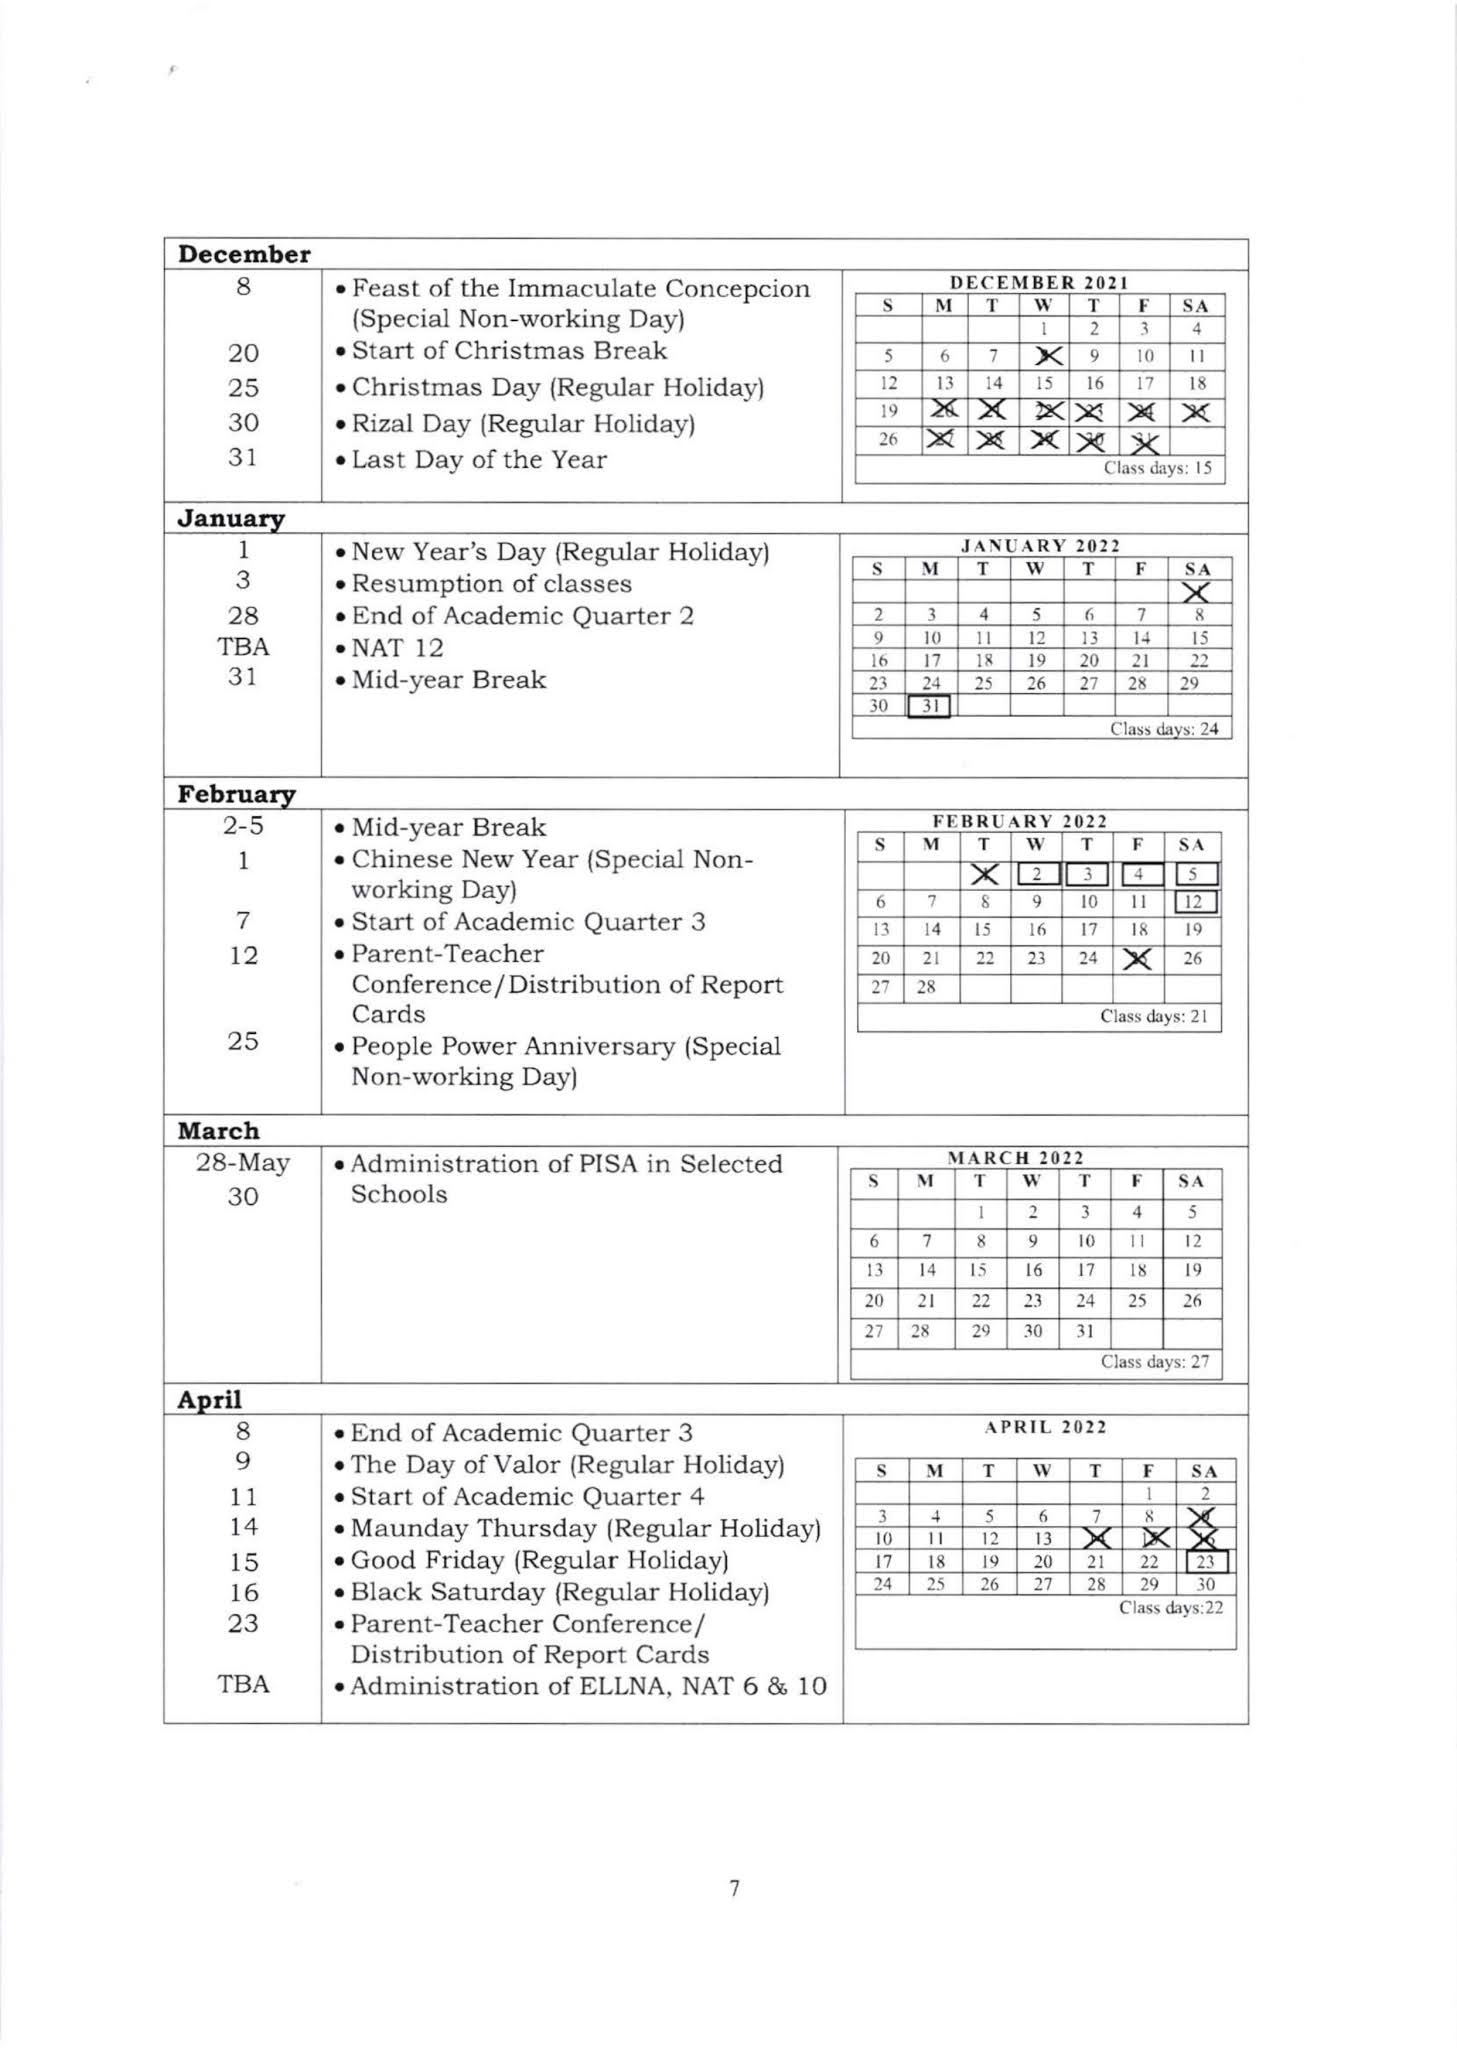 nyc-doe-school-calendar-2023-to-2023-get-calendar-2023-update